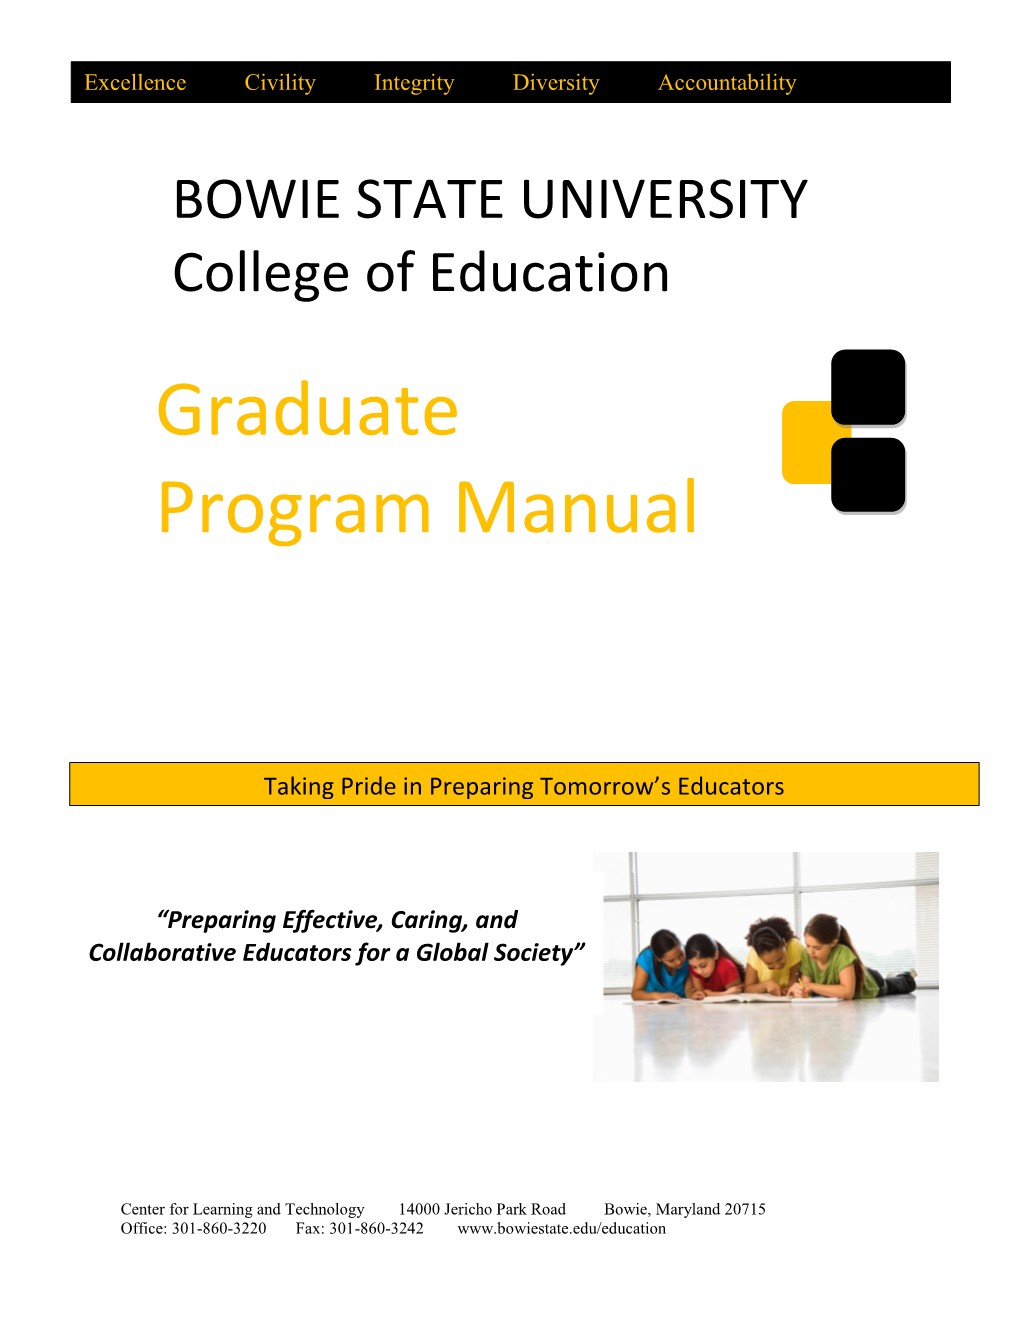 Graduate Program Manual 2